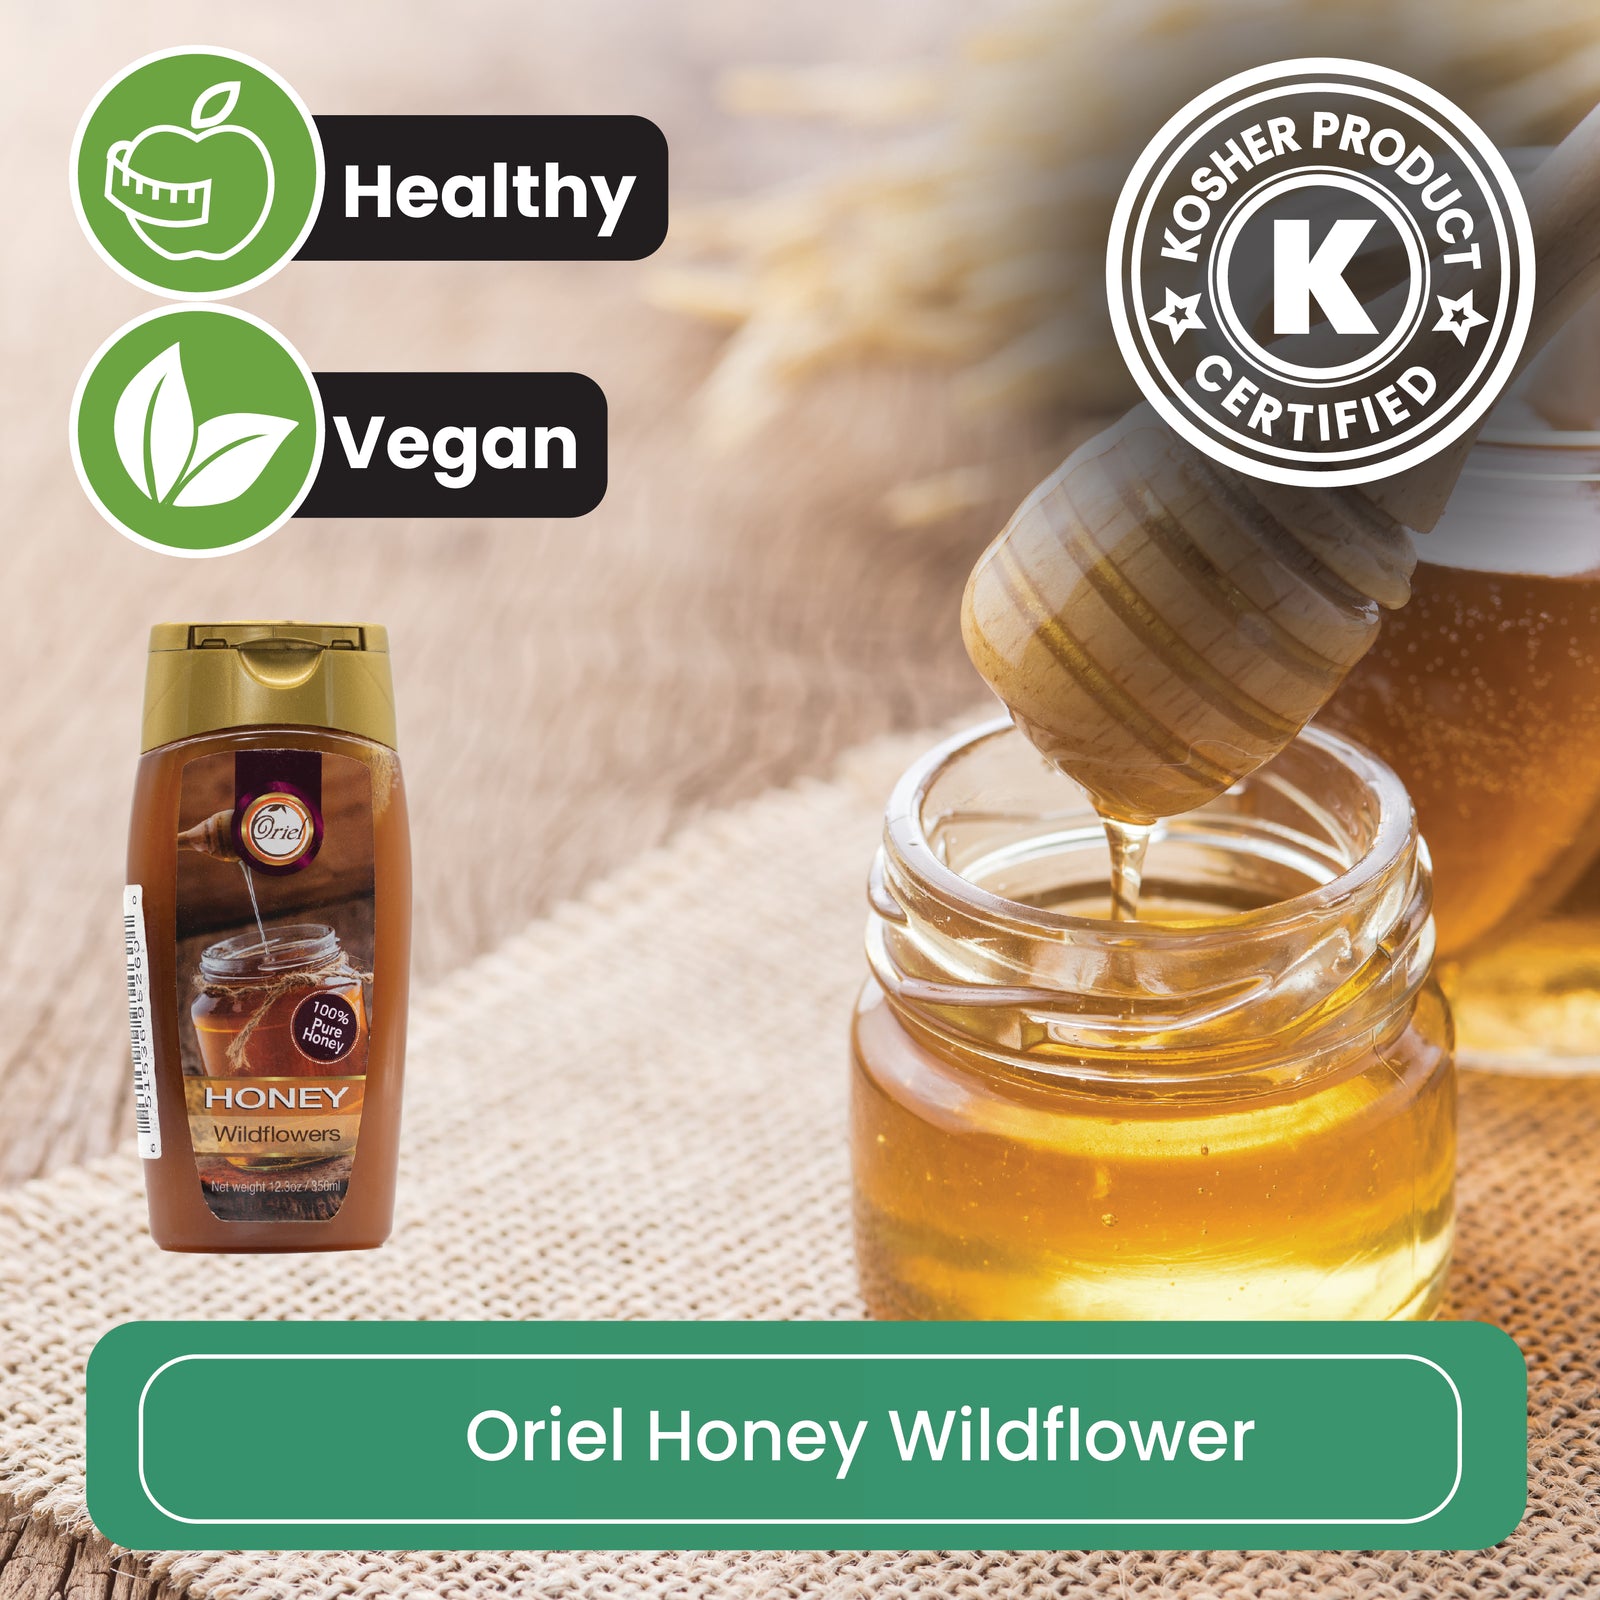 Oriel Honey Wildflowers